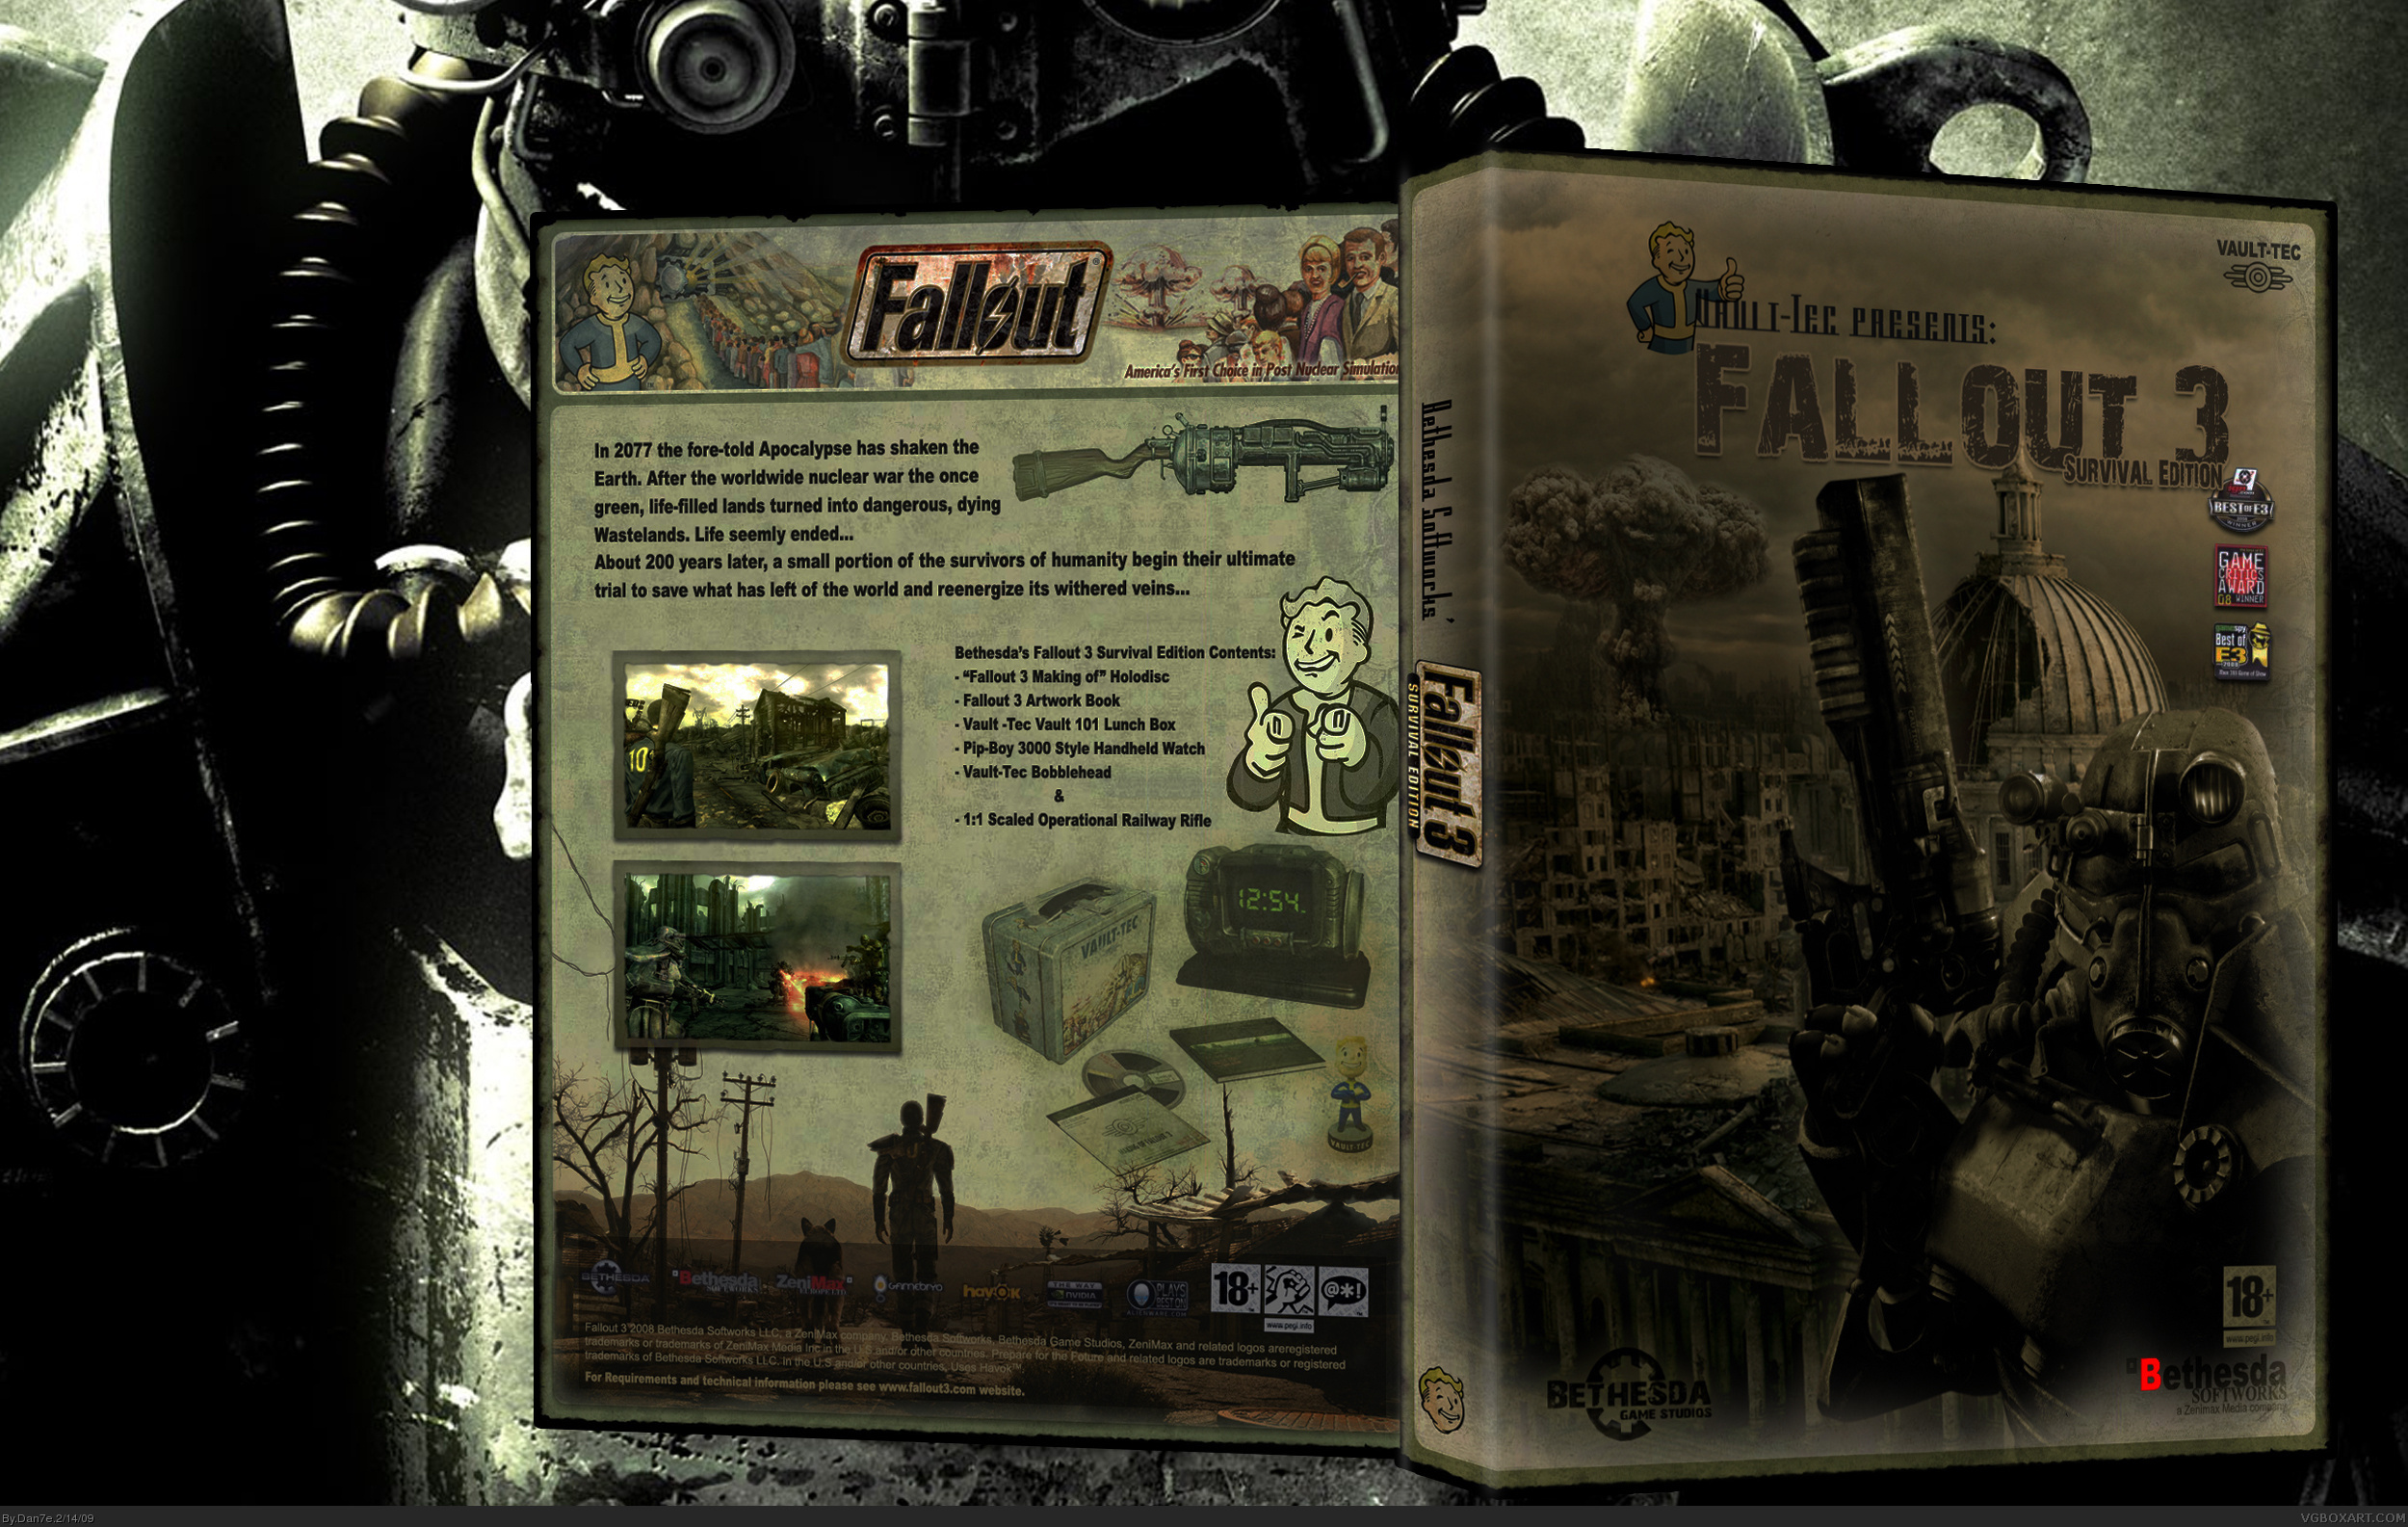 Fallout 3 Survival Ed. box cover